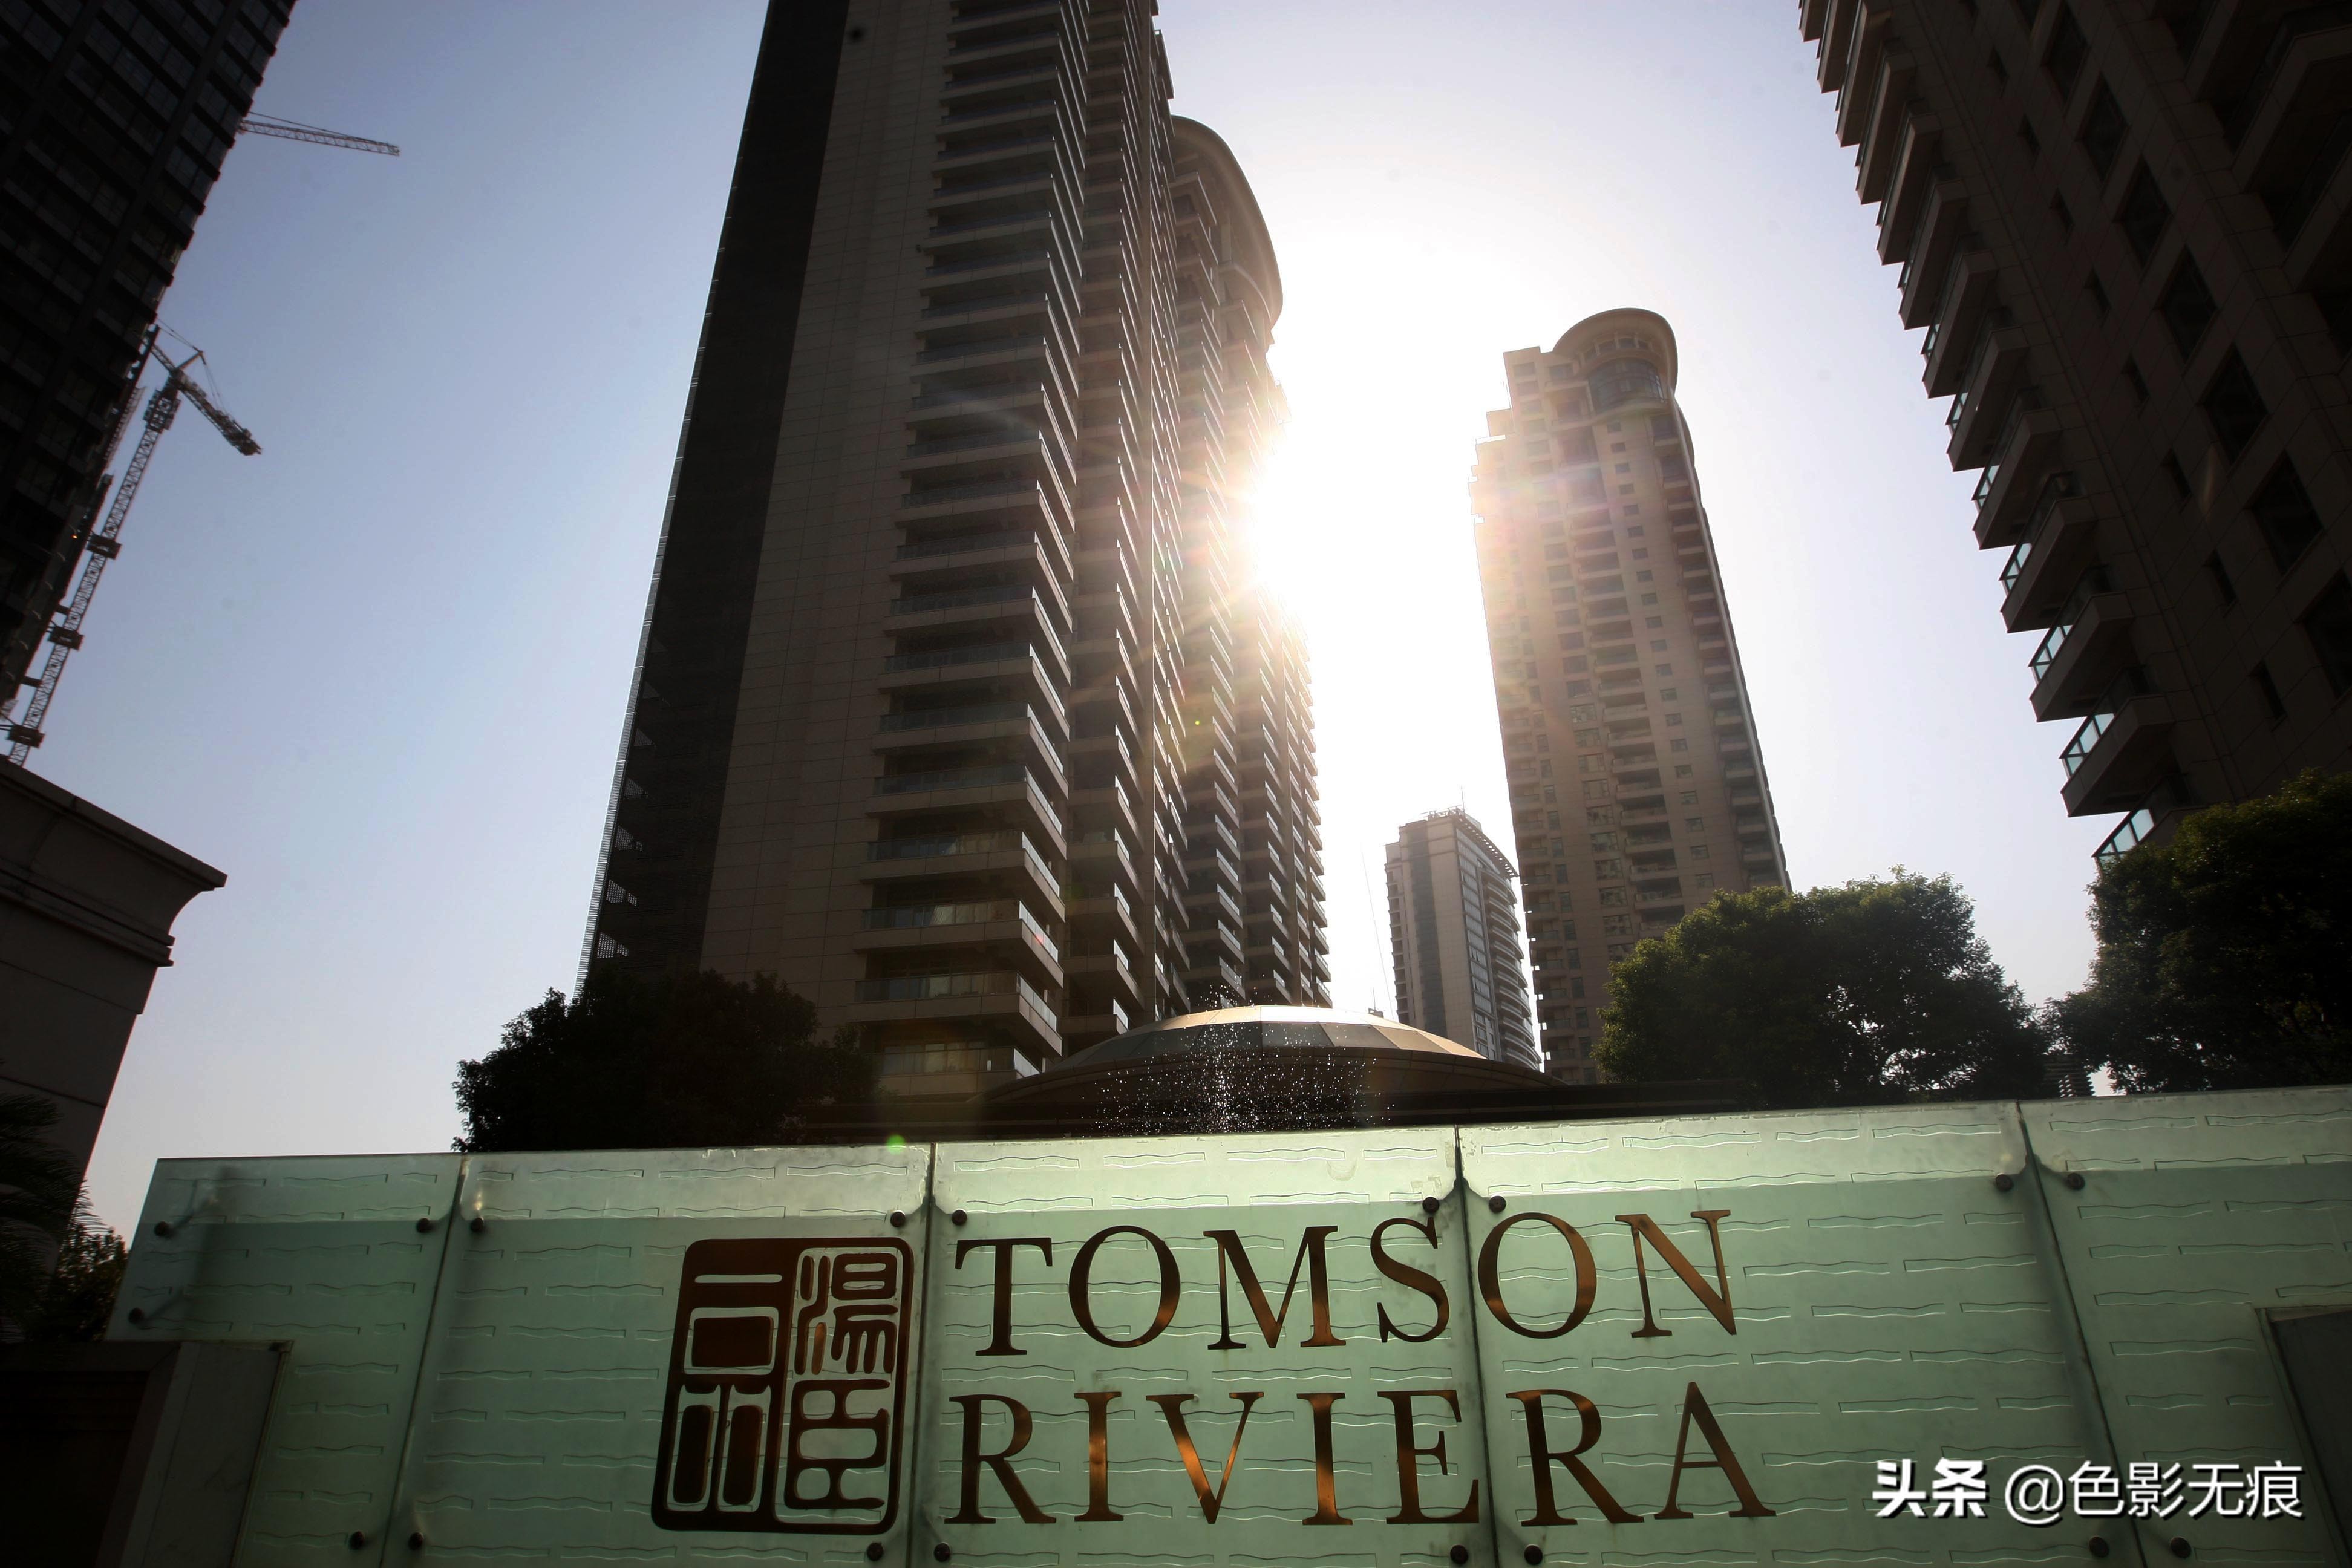 实拍上海汤臣一品,单套房价上亿元,被誉为"中国第一豪宅"